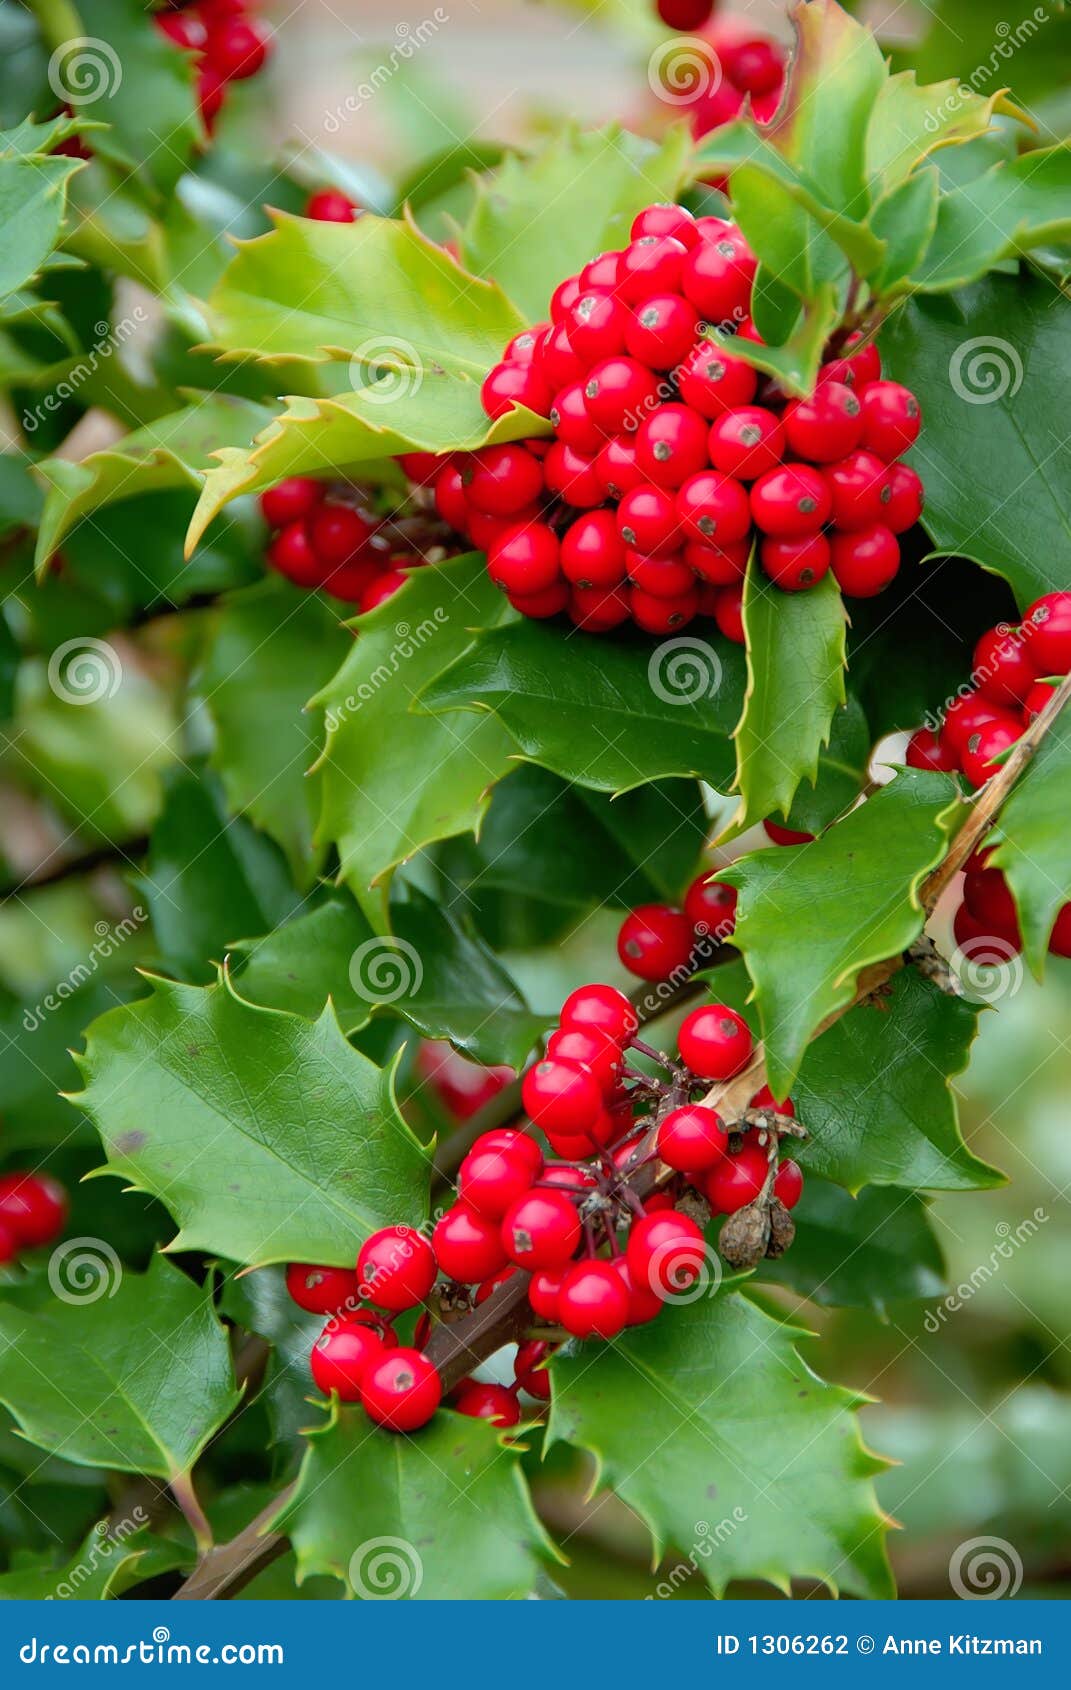 yuletide holly berries